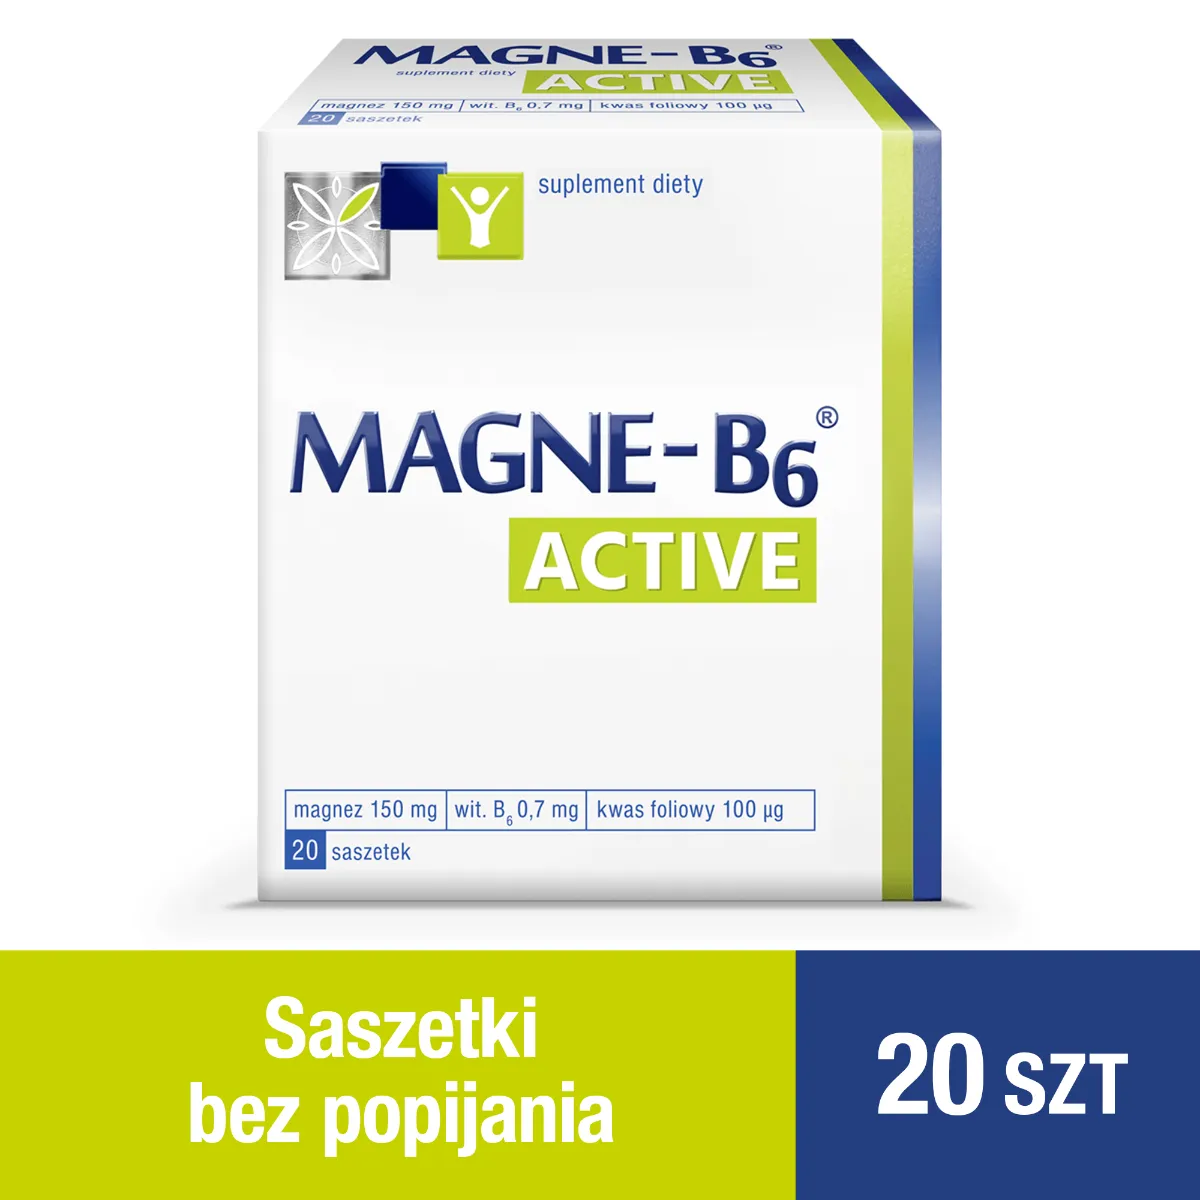 Magne B6 Active, suplement diety, 20 saszetek 